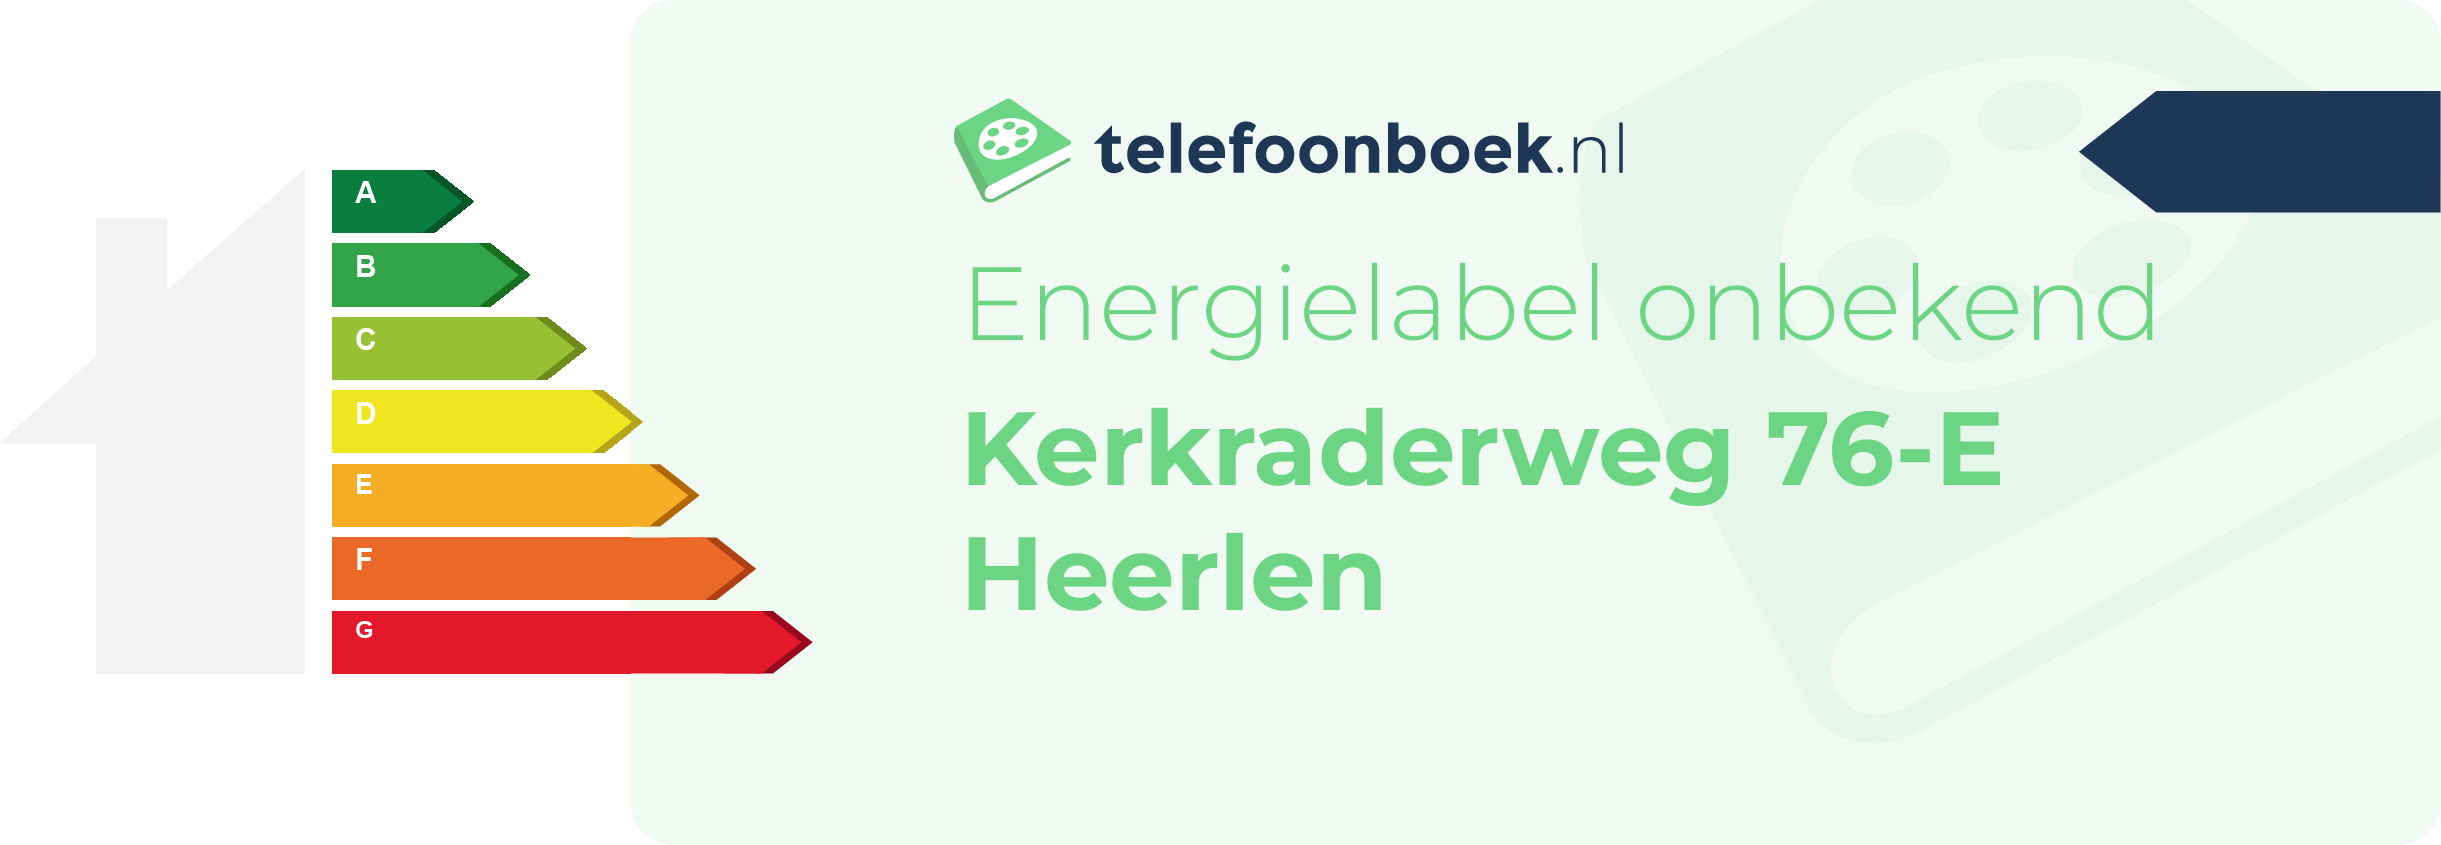 Energielabel Kerkraderweg 76-E Heerlen